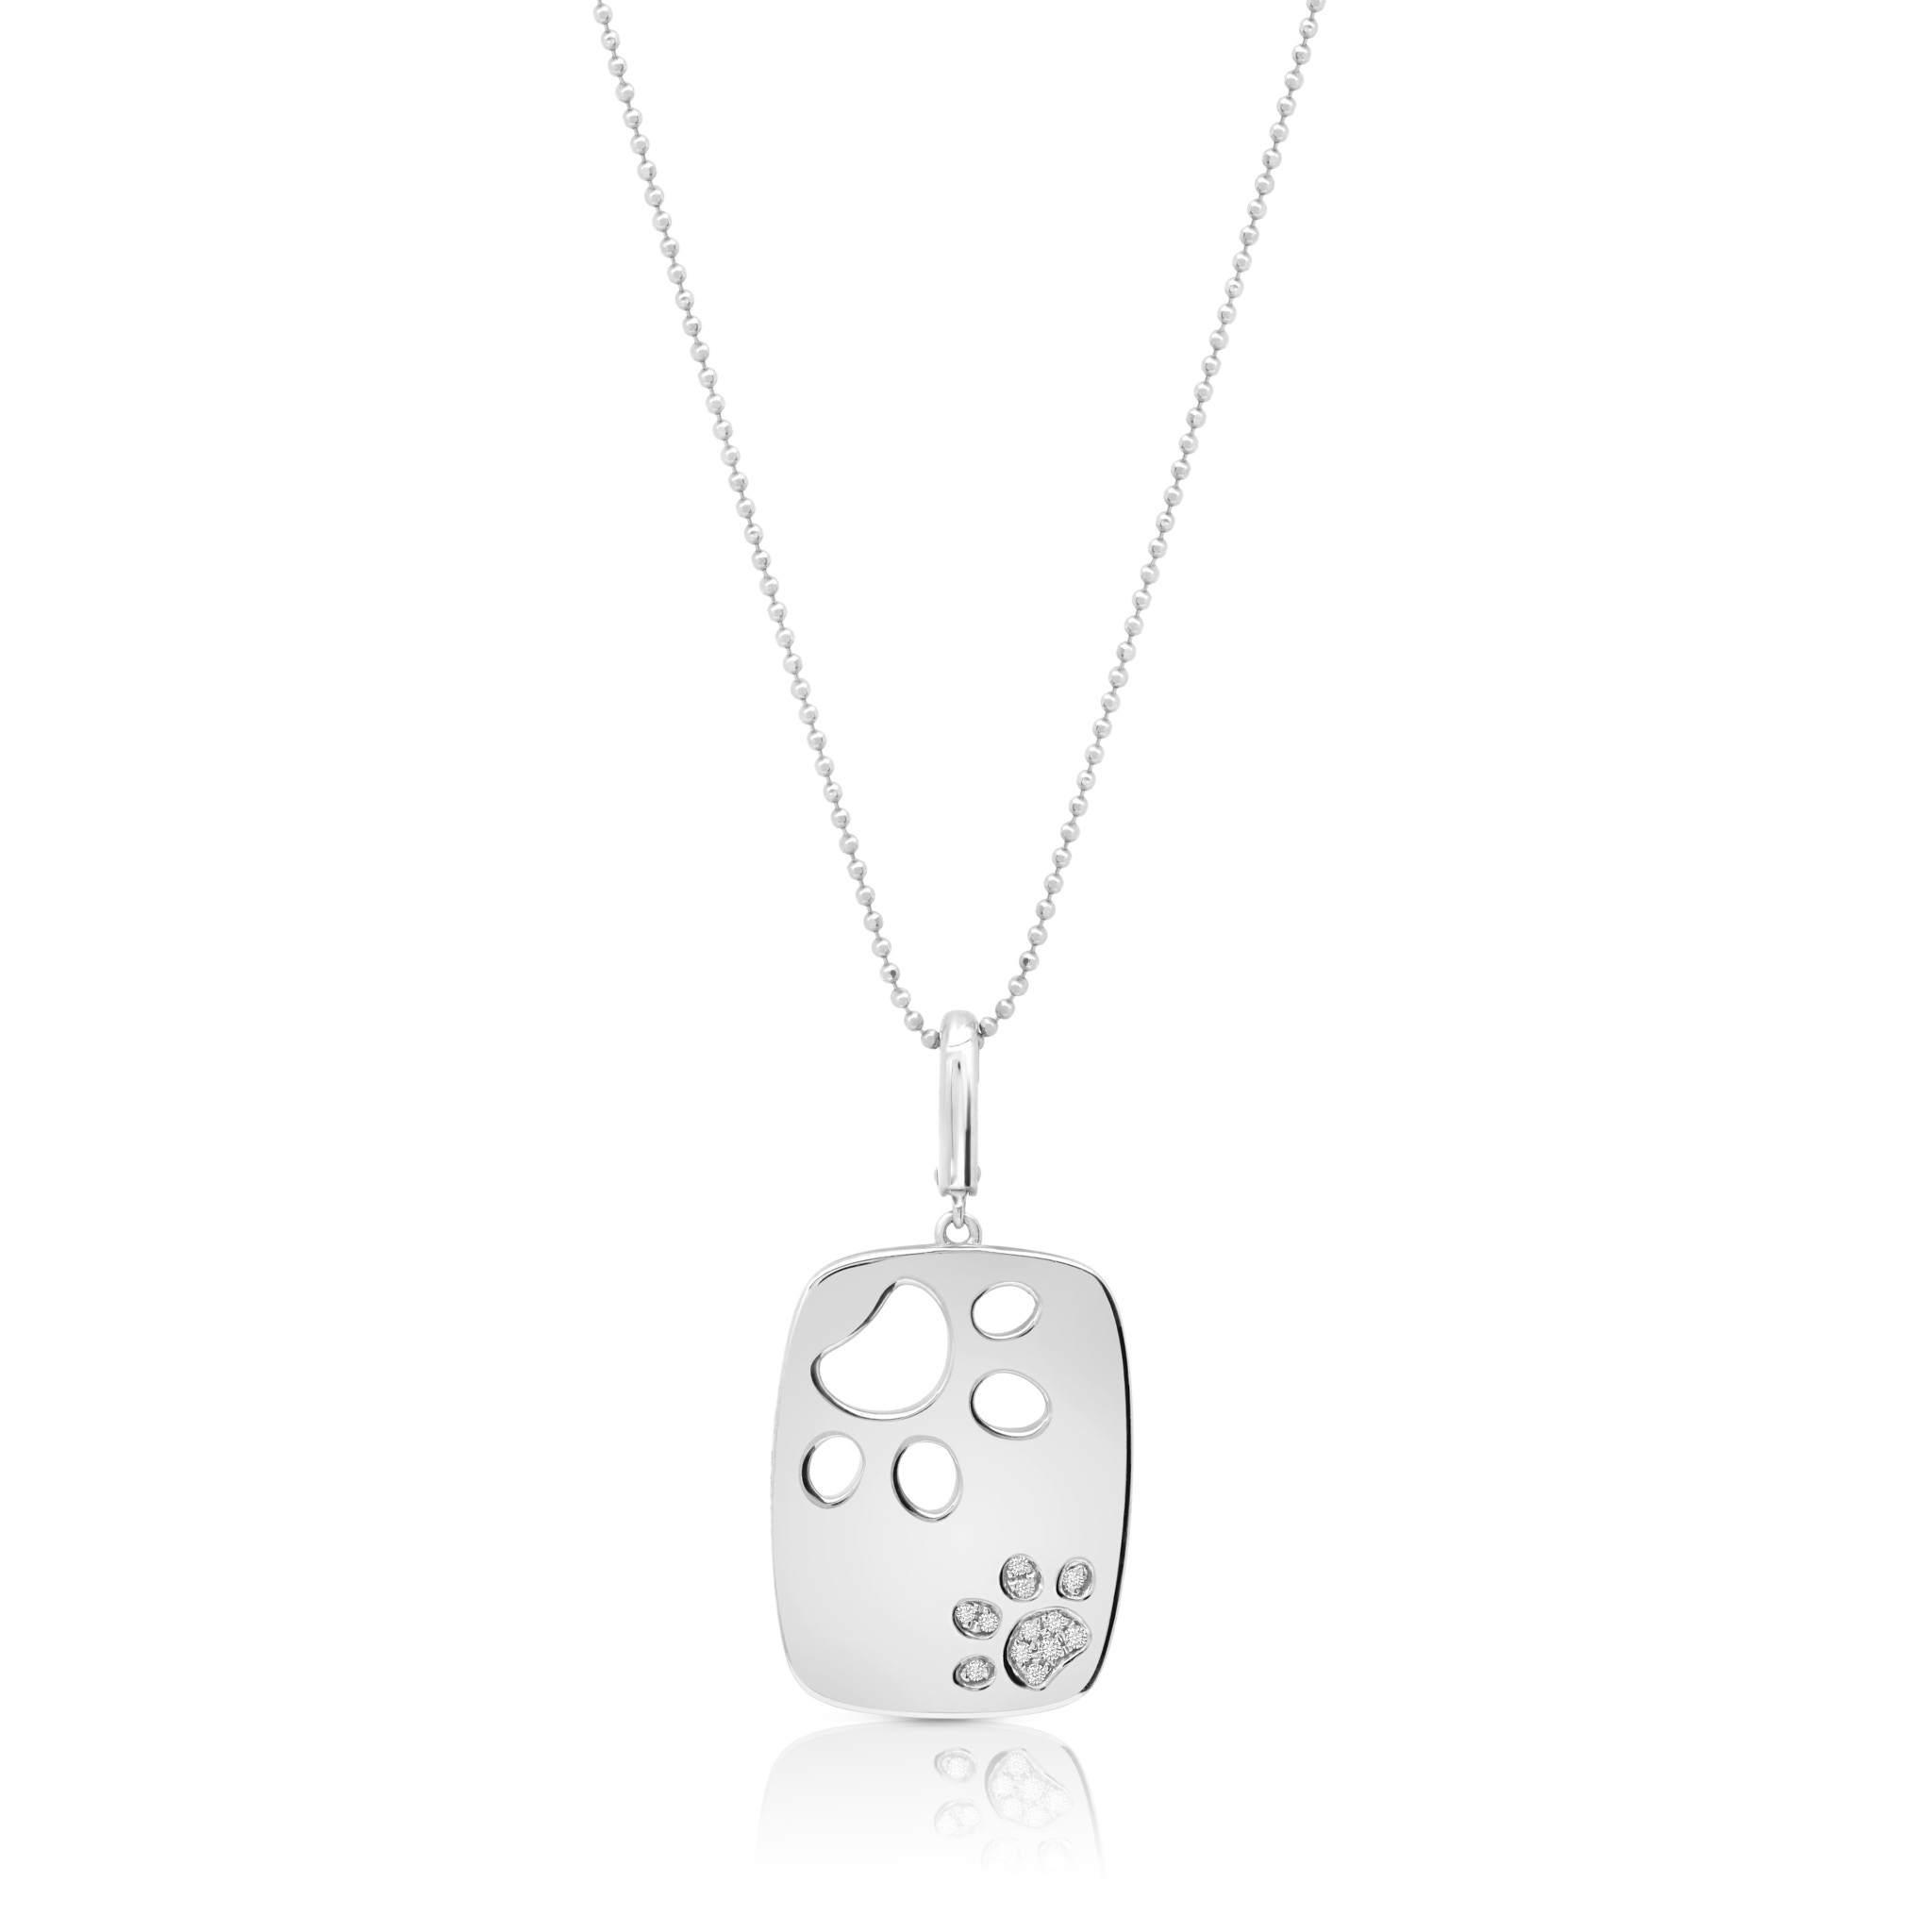 Graziela Gems - Necklace - Juxtaposed Dog Paw Rounded Rectangle Pendant - White Gold 14K Diamond